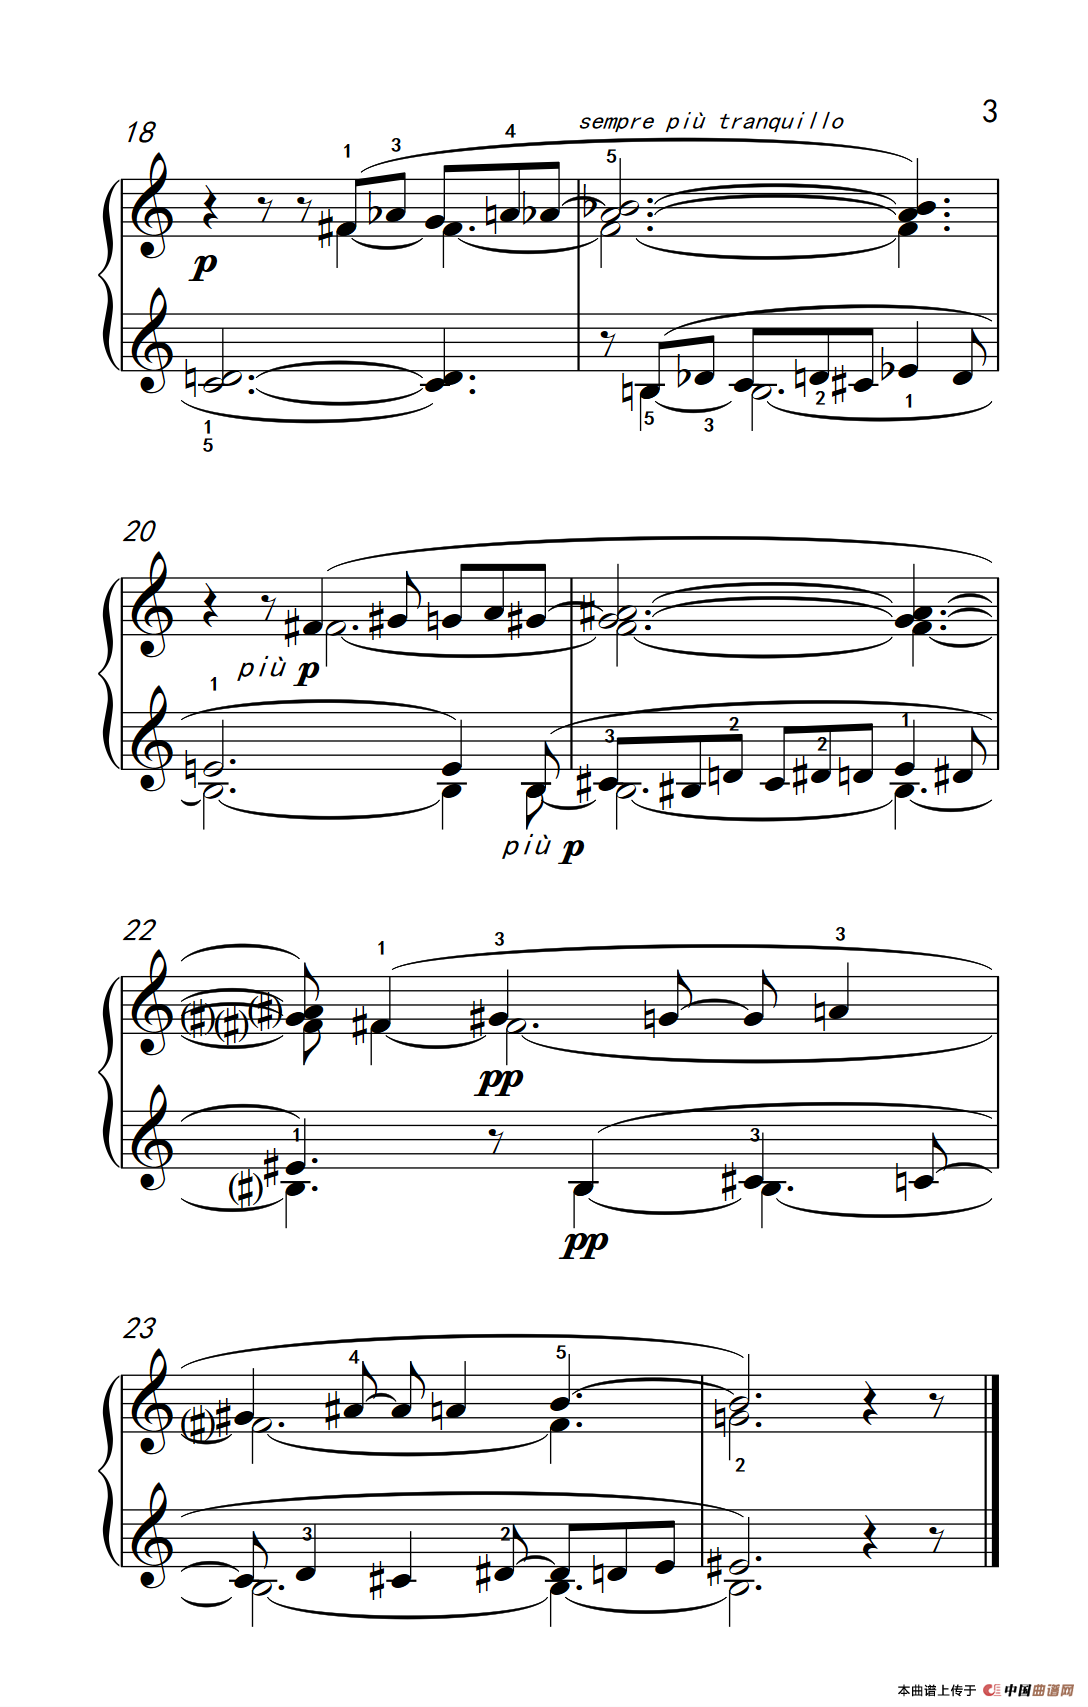 《大二度的旋律及和弦》钢琴曲谱图分享